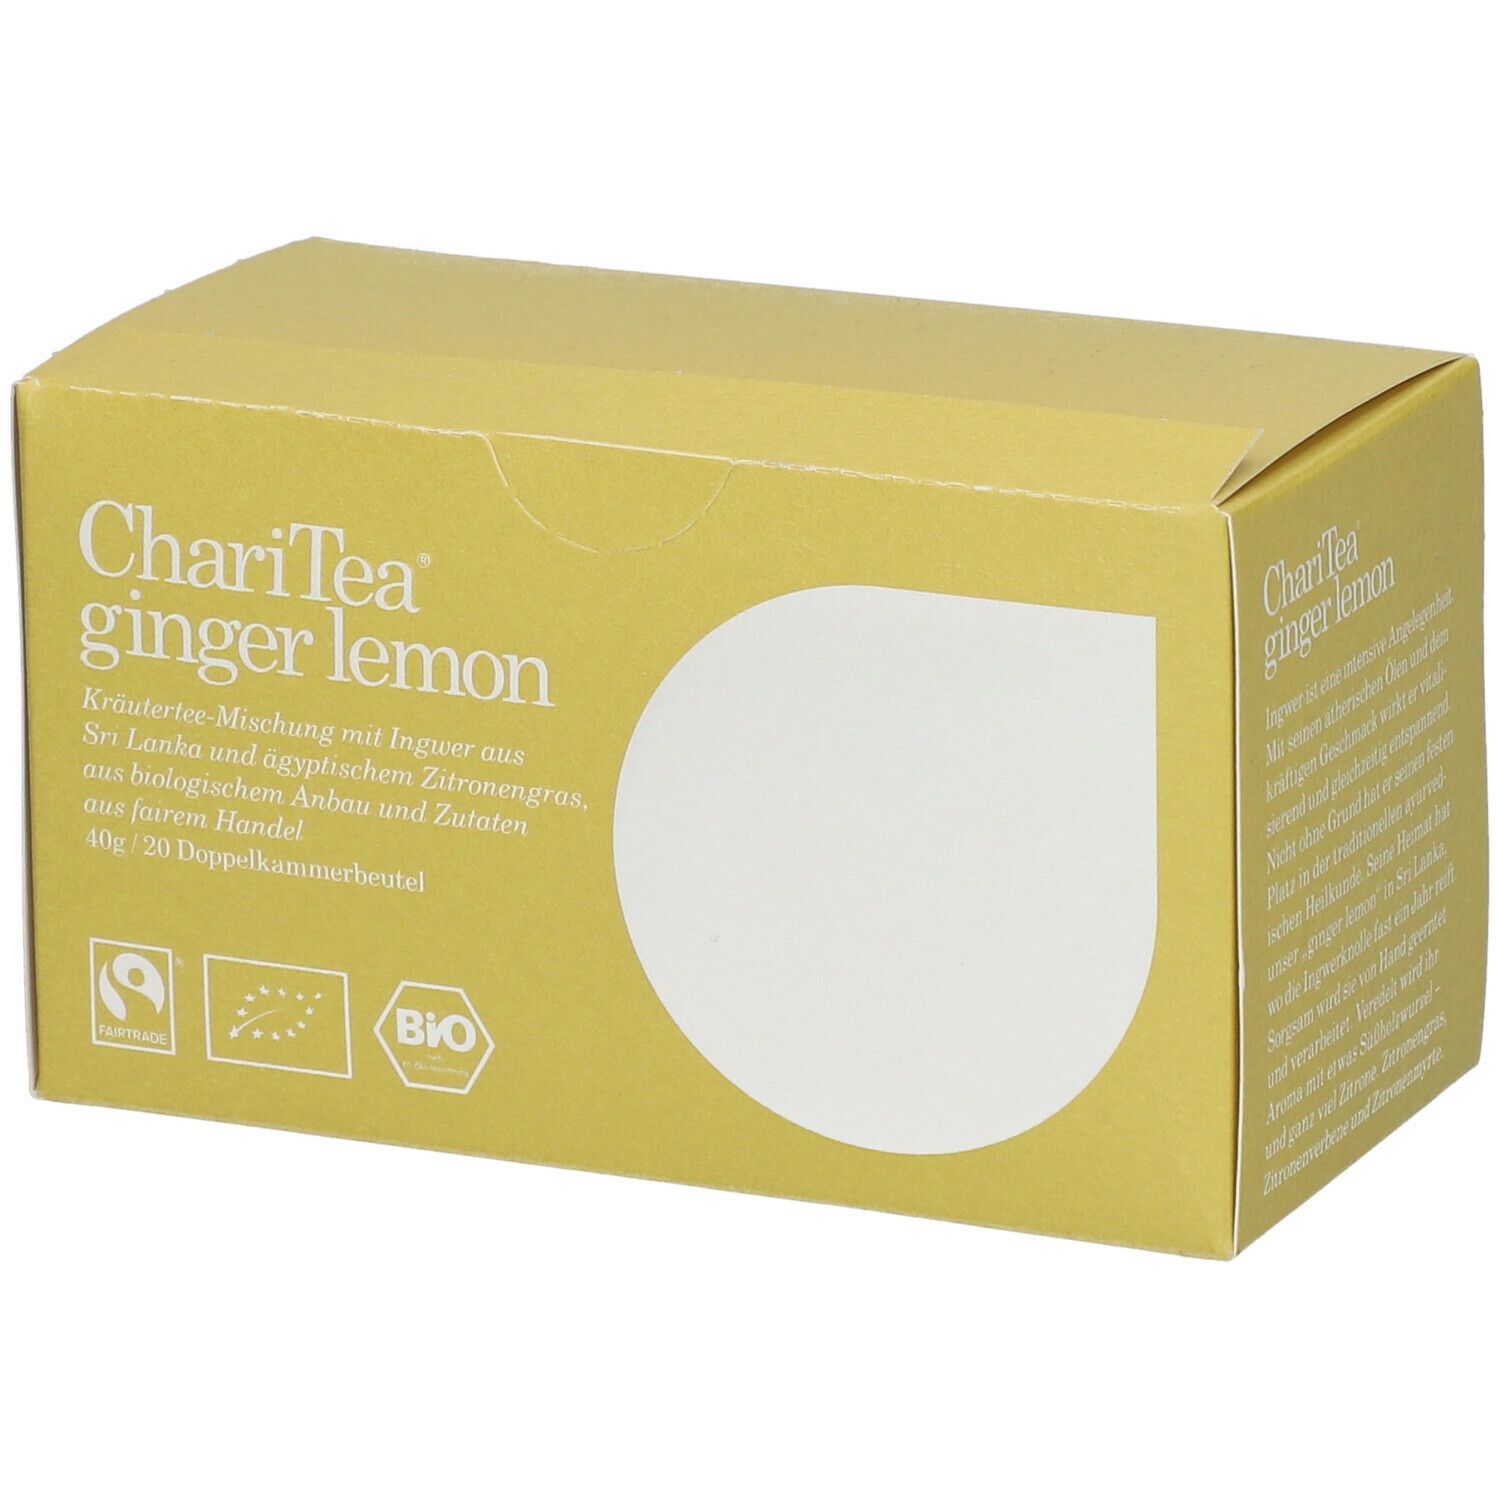 Image of ChariTea® ginger lemon